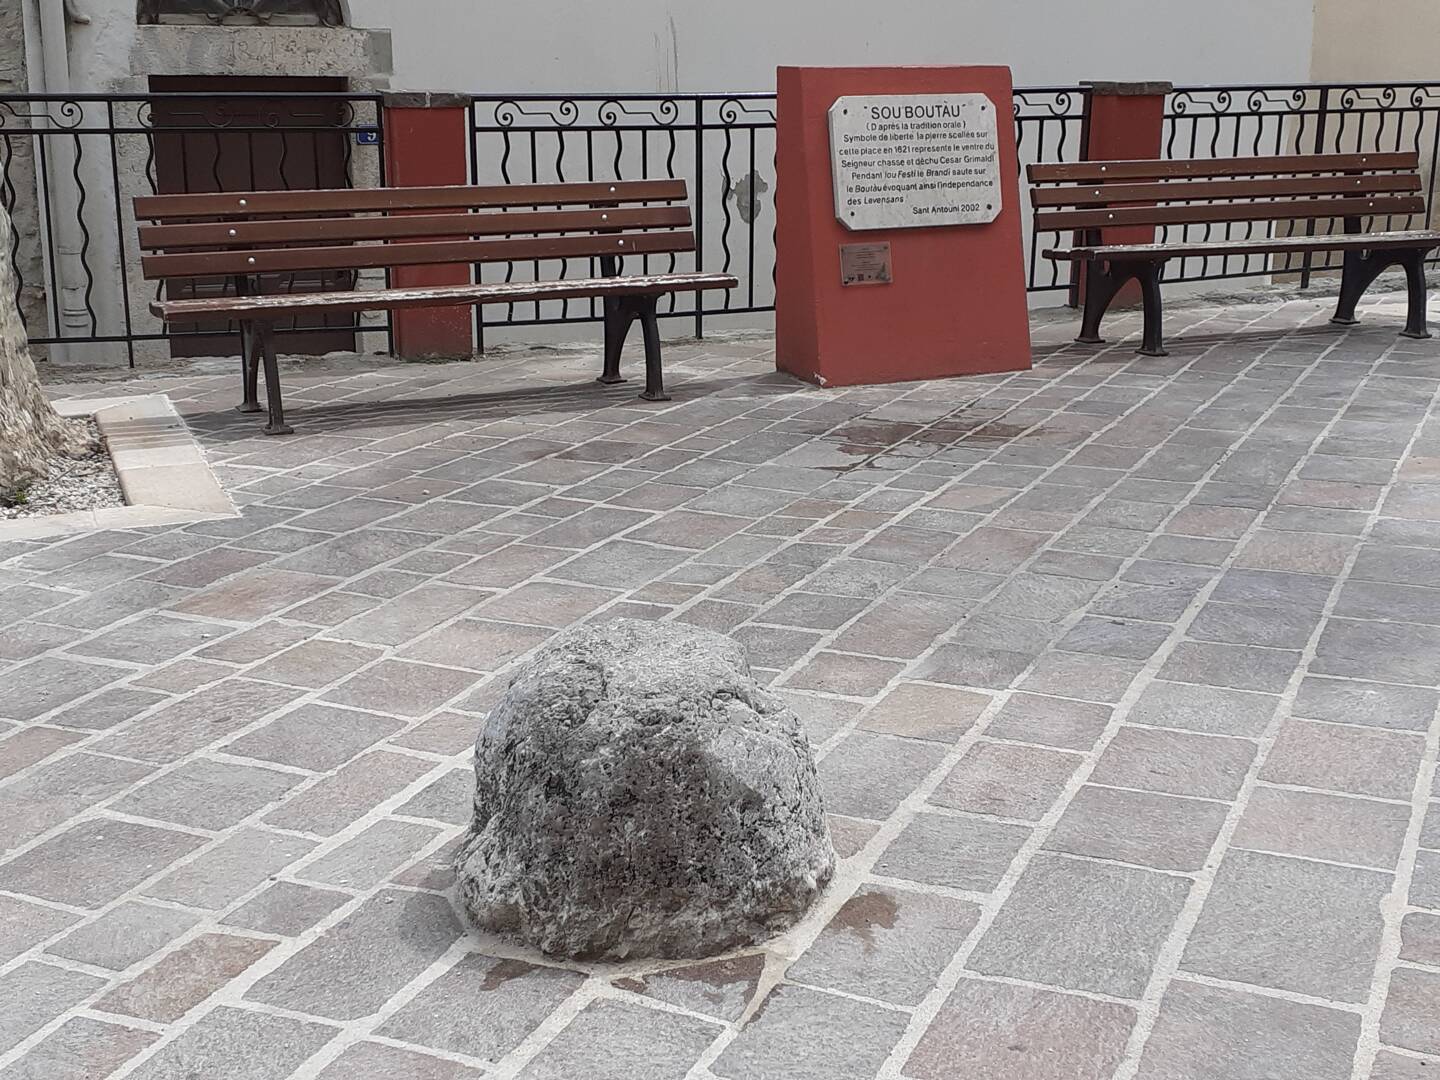 La pierre, scellée en 1621, représente le ventre du seigneur César Grimaldi déchu sur laquelle les habitants dansent en signe de liberté. La fête commence ce samedi à partir de 15heures.